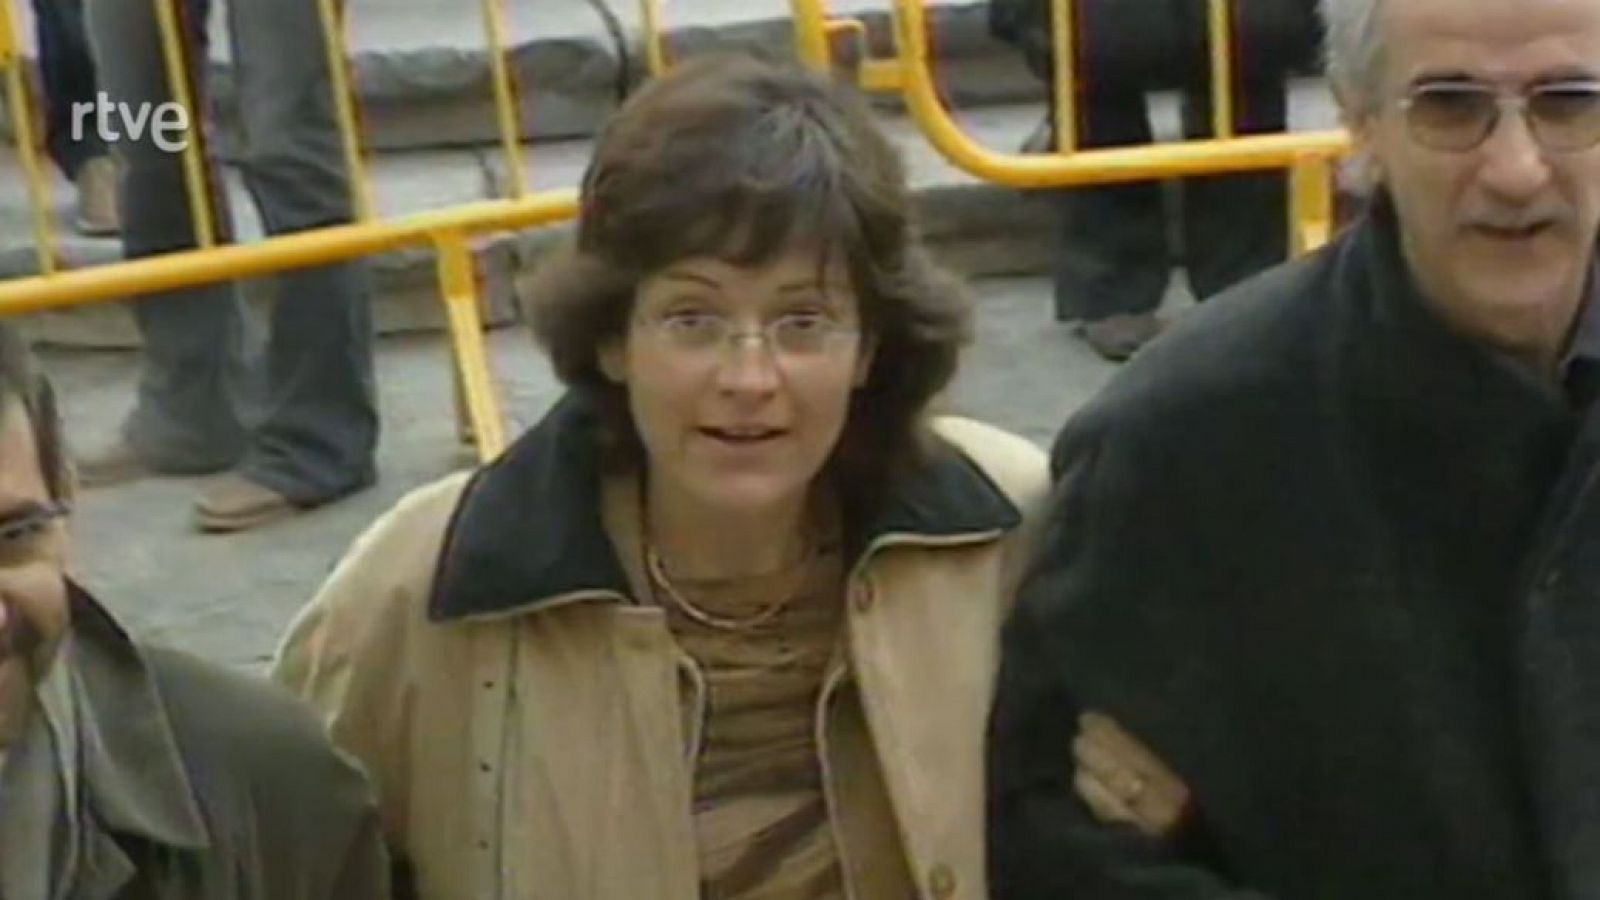 Judici cas Olot - 2002, una altra història - Arxiu TVE Catalunya